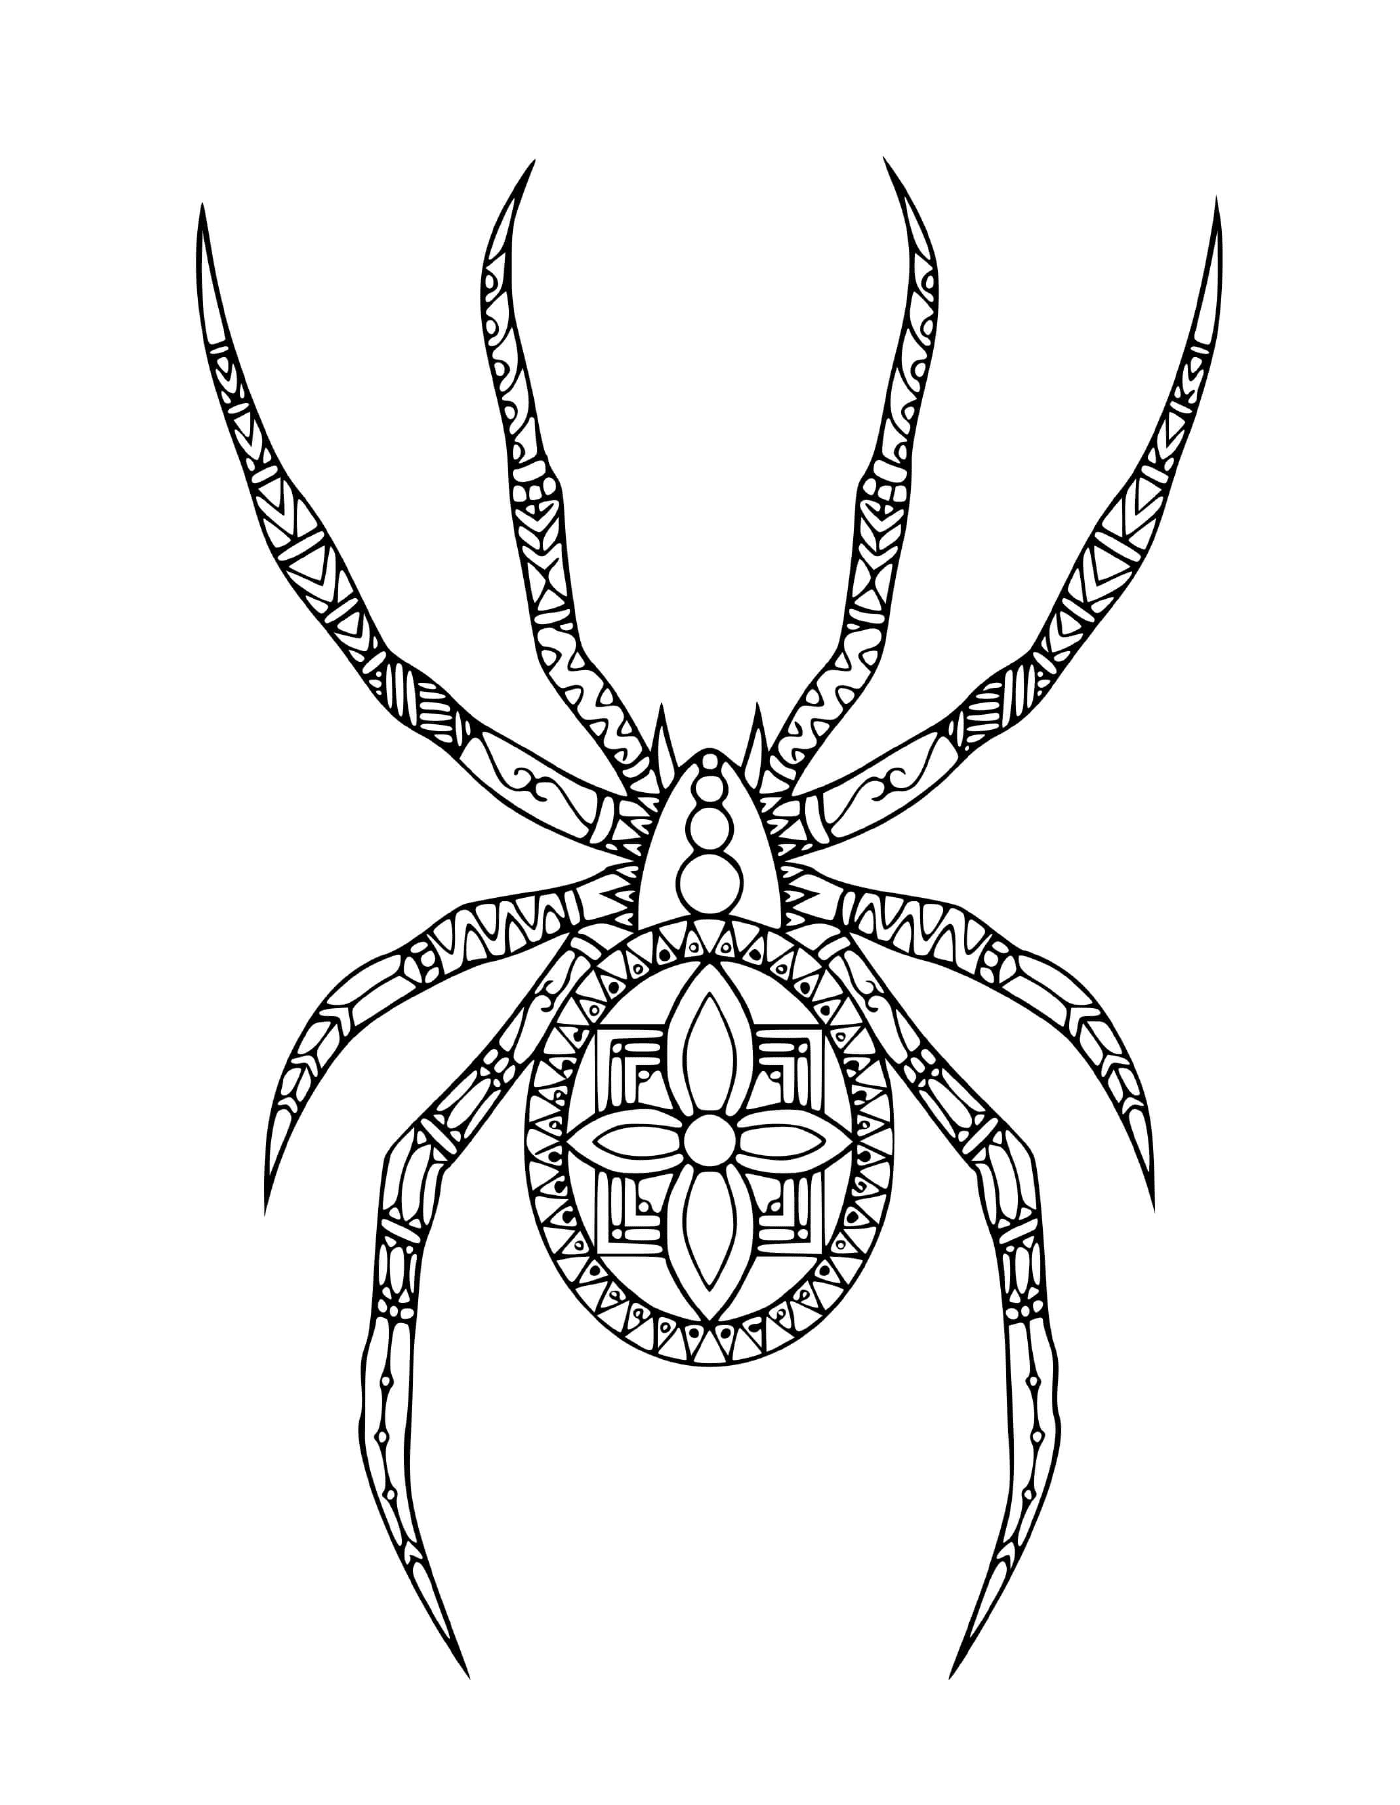  Eine Spinne im Doodle-Stil 